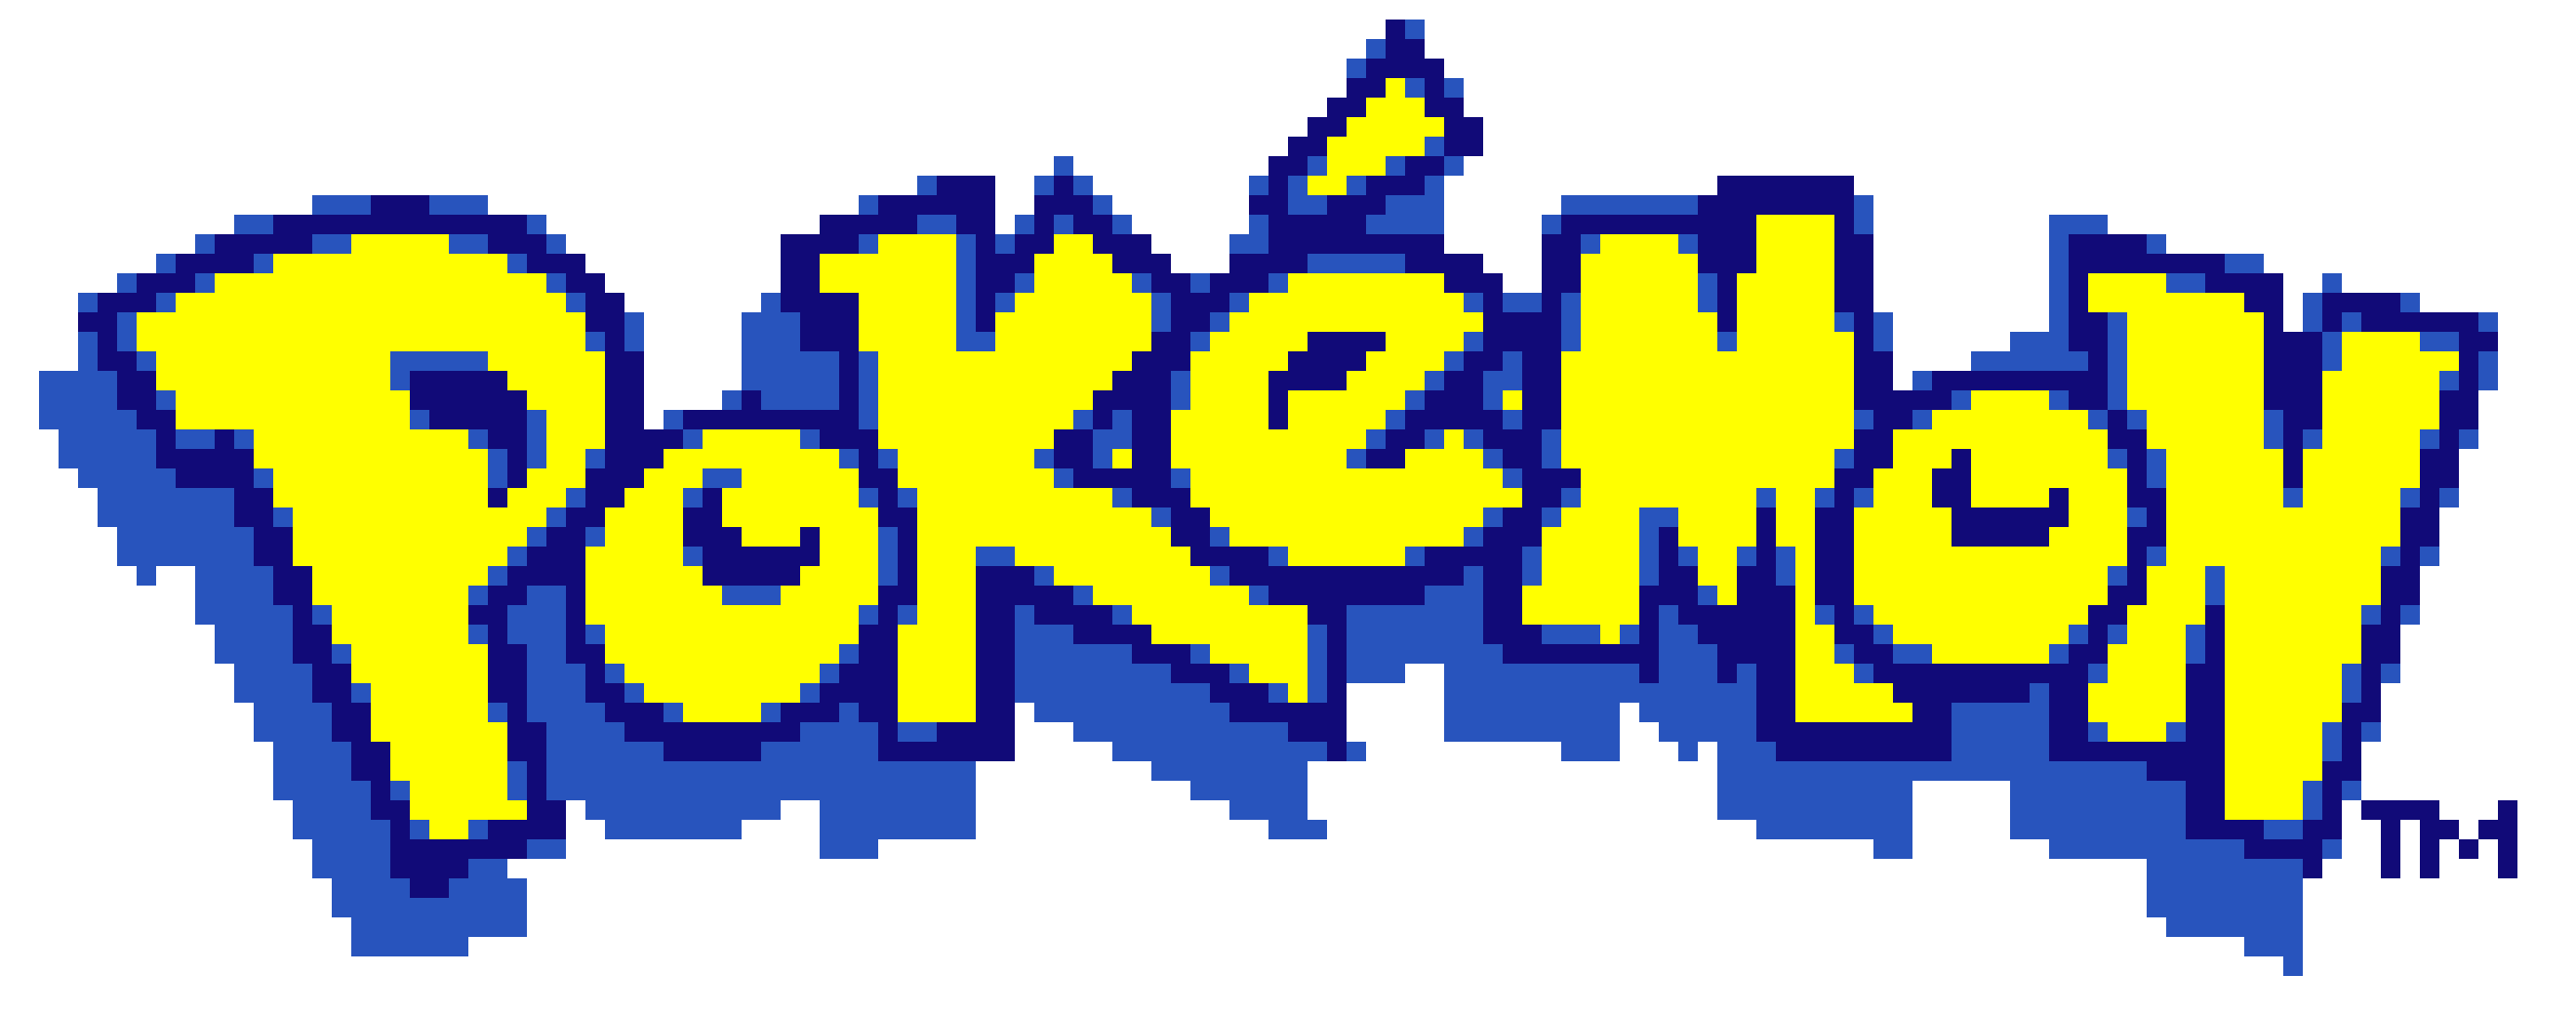 Pokemon Logo PNG image Transparentee